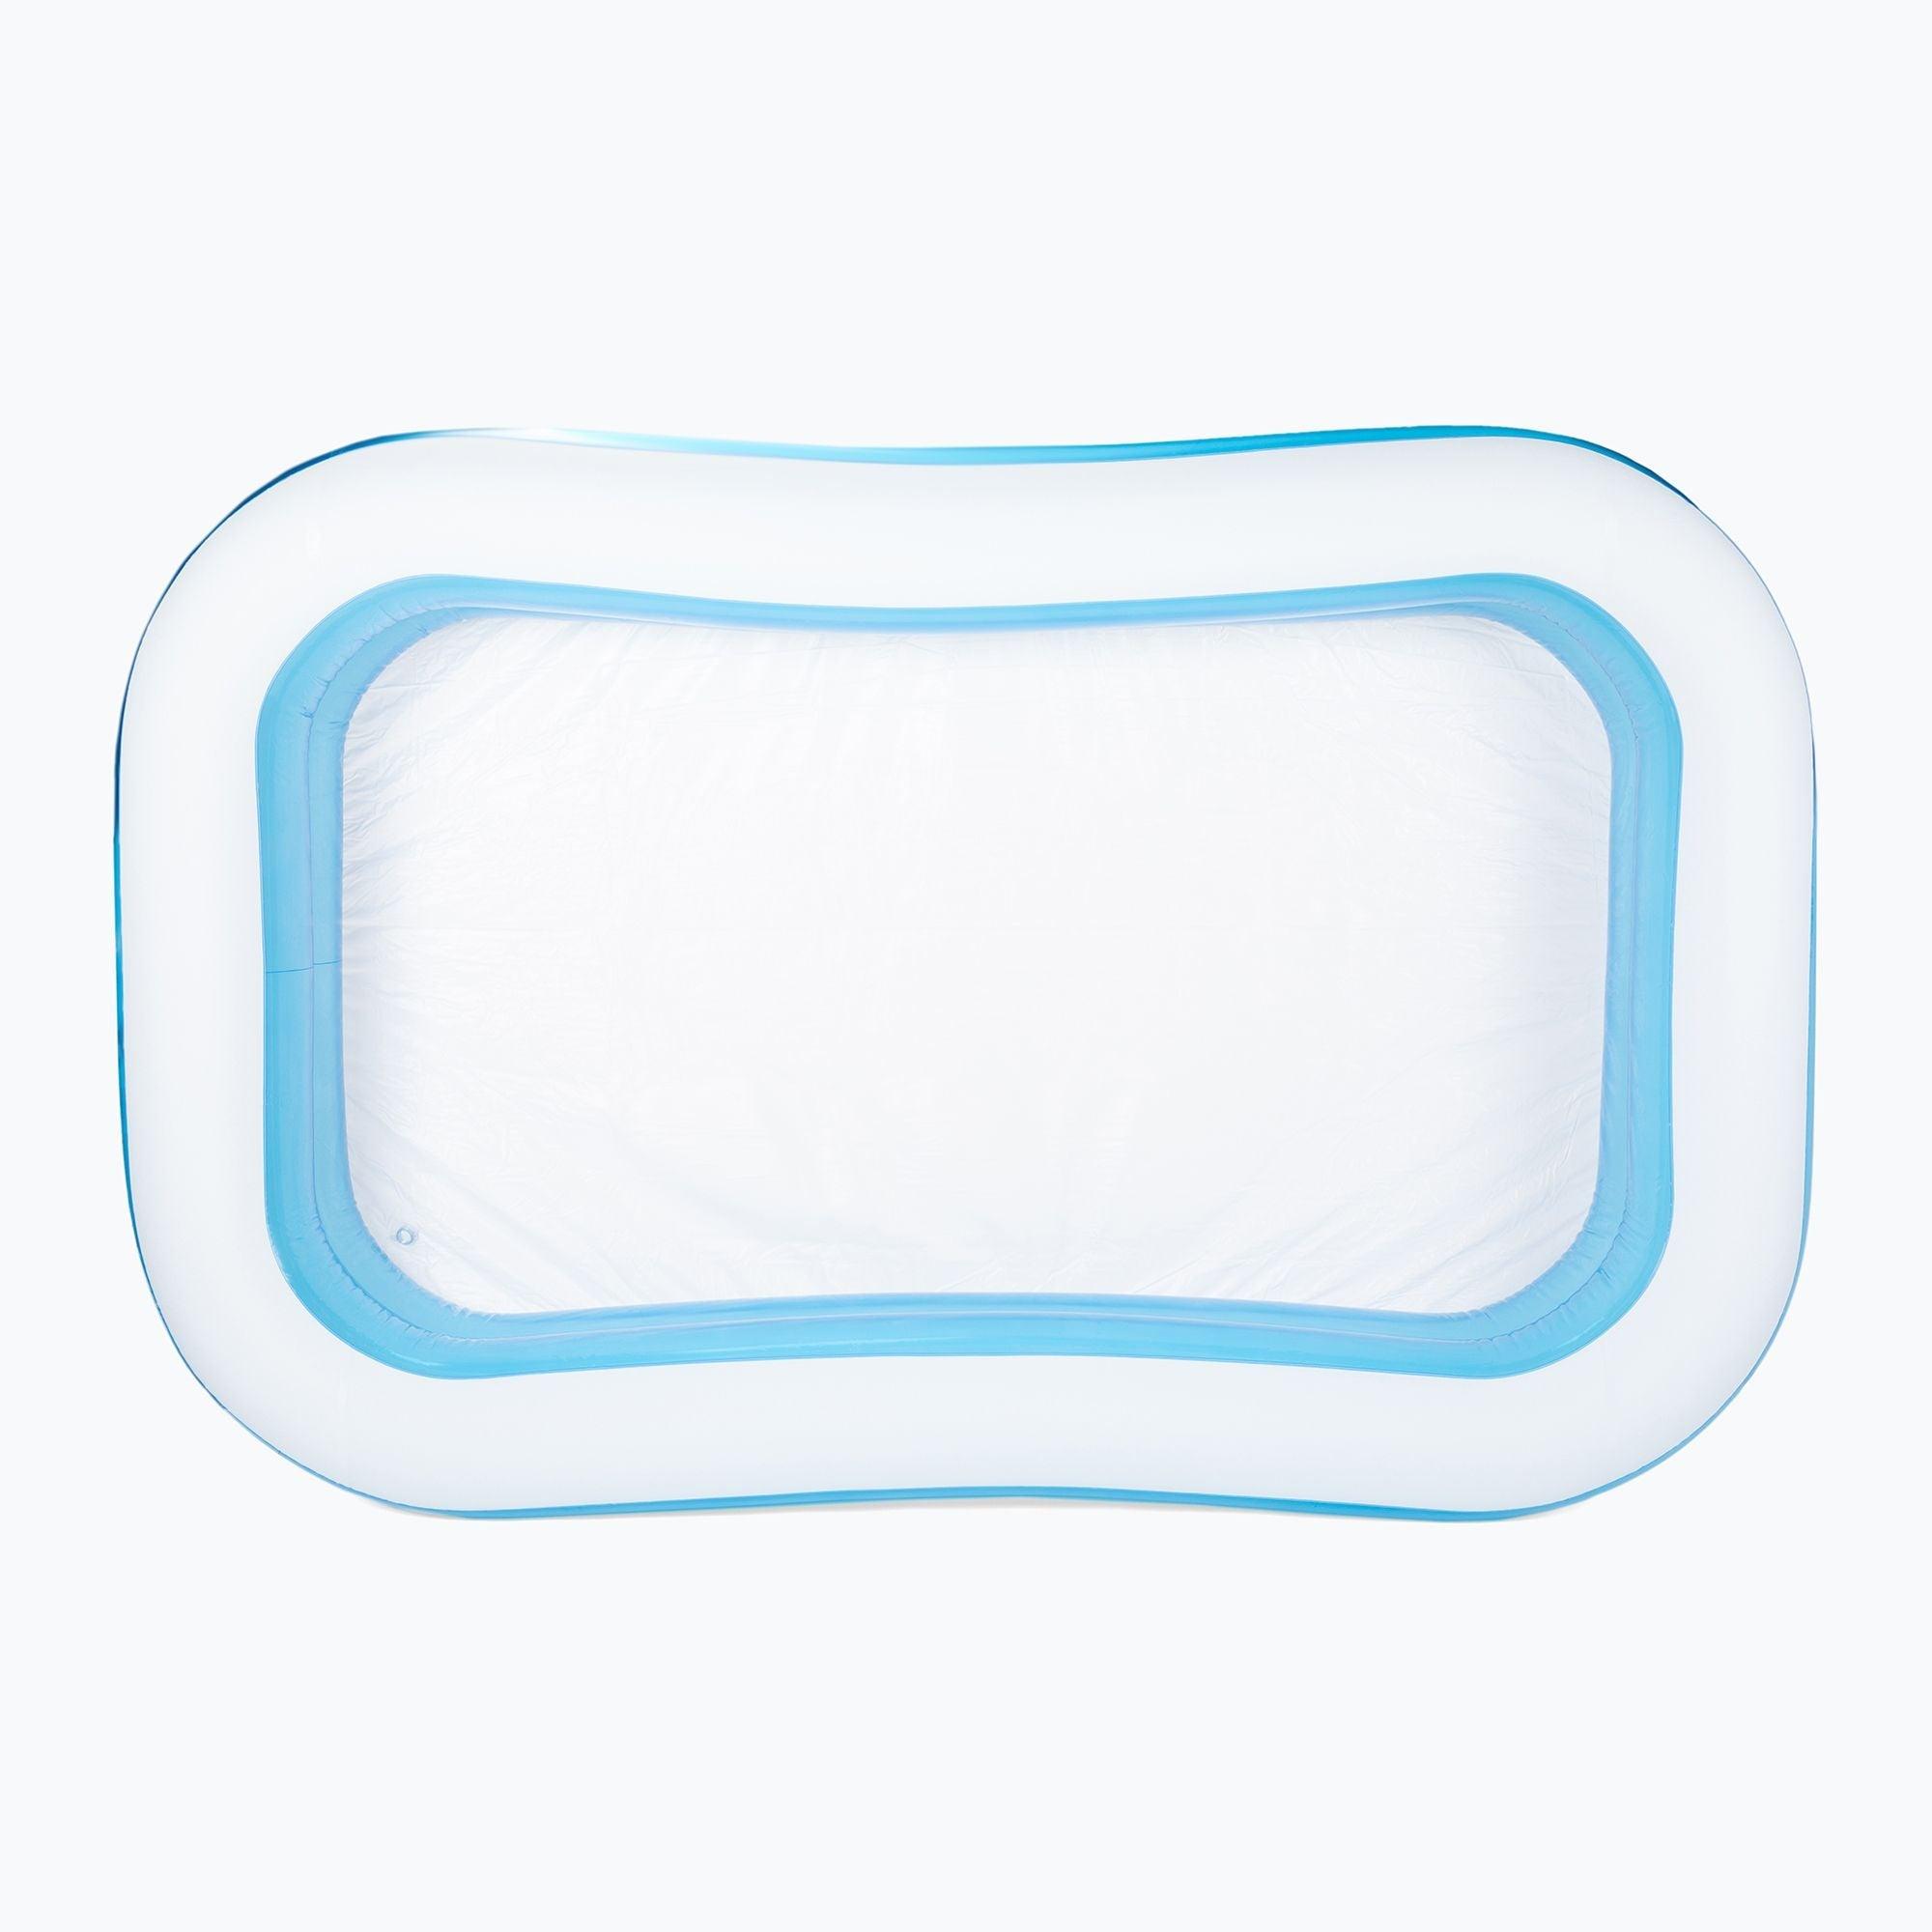 Aquastique: piscine gonflable pour enfants 262 cm